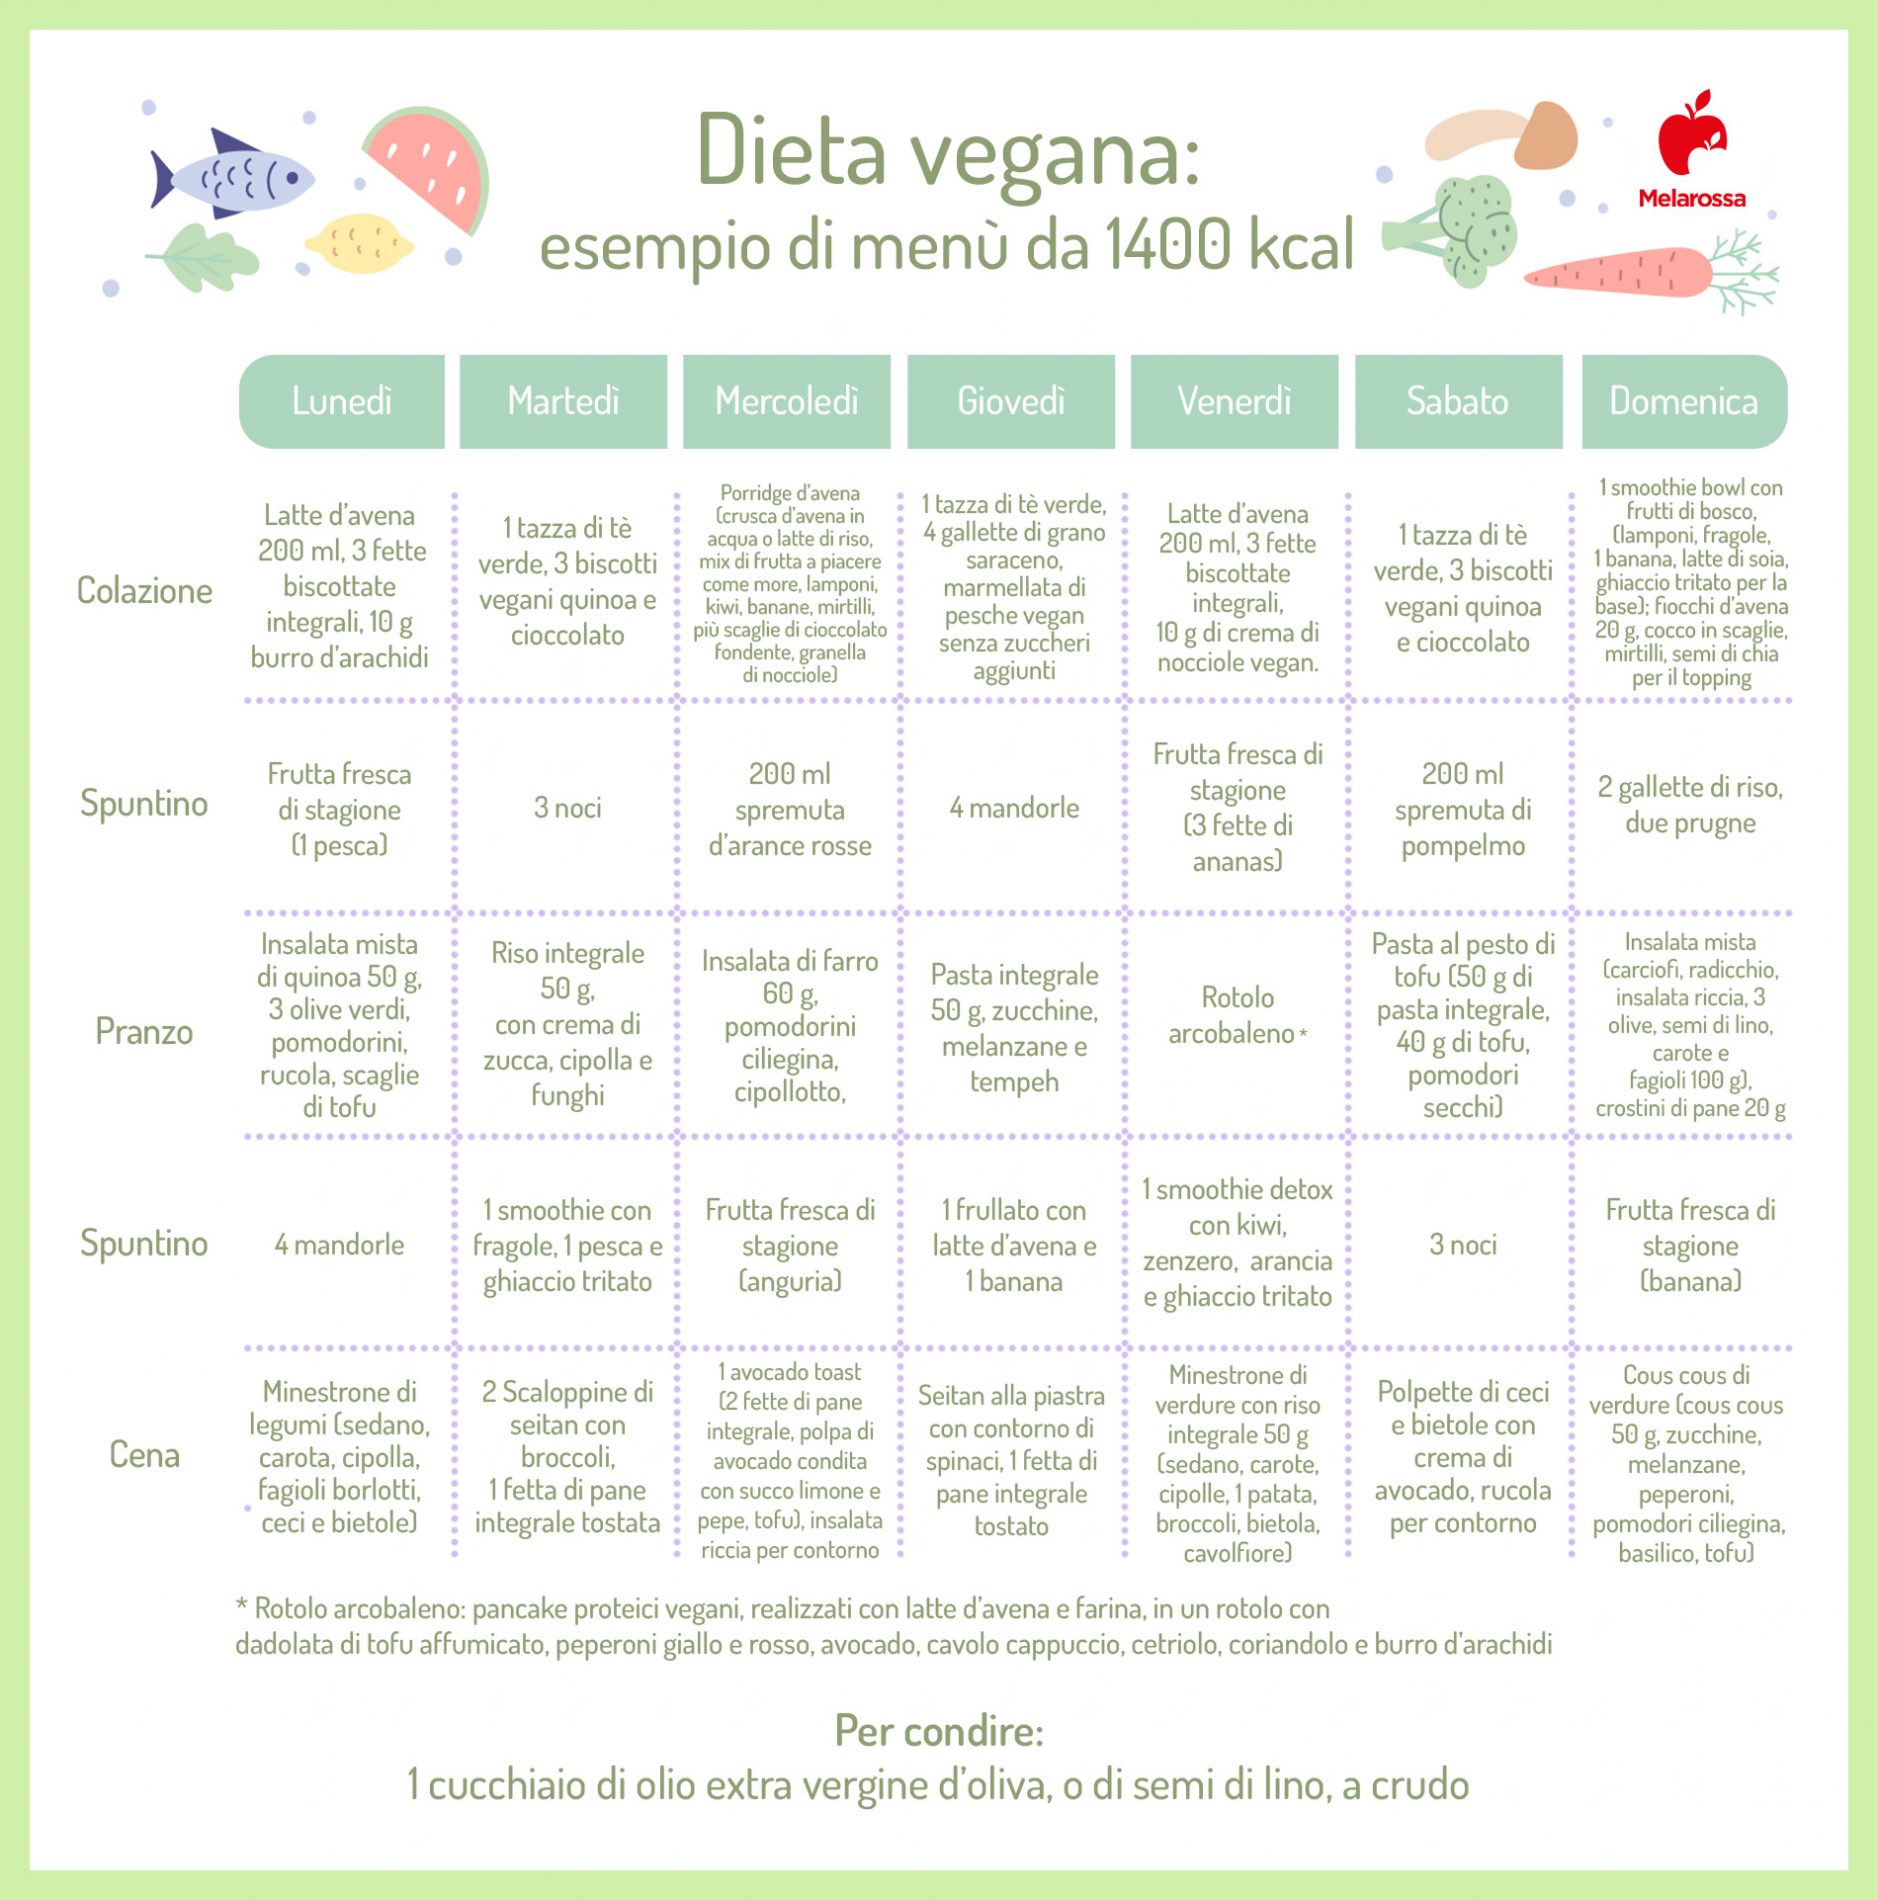 esempio di menù di dieta vegana 